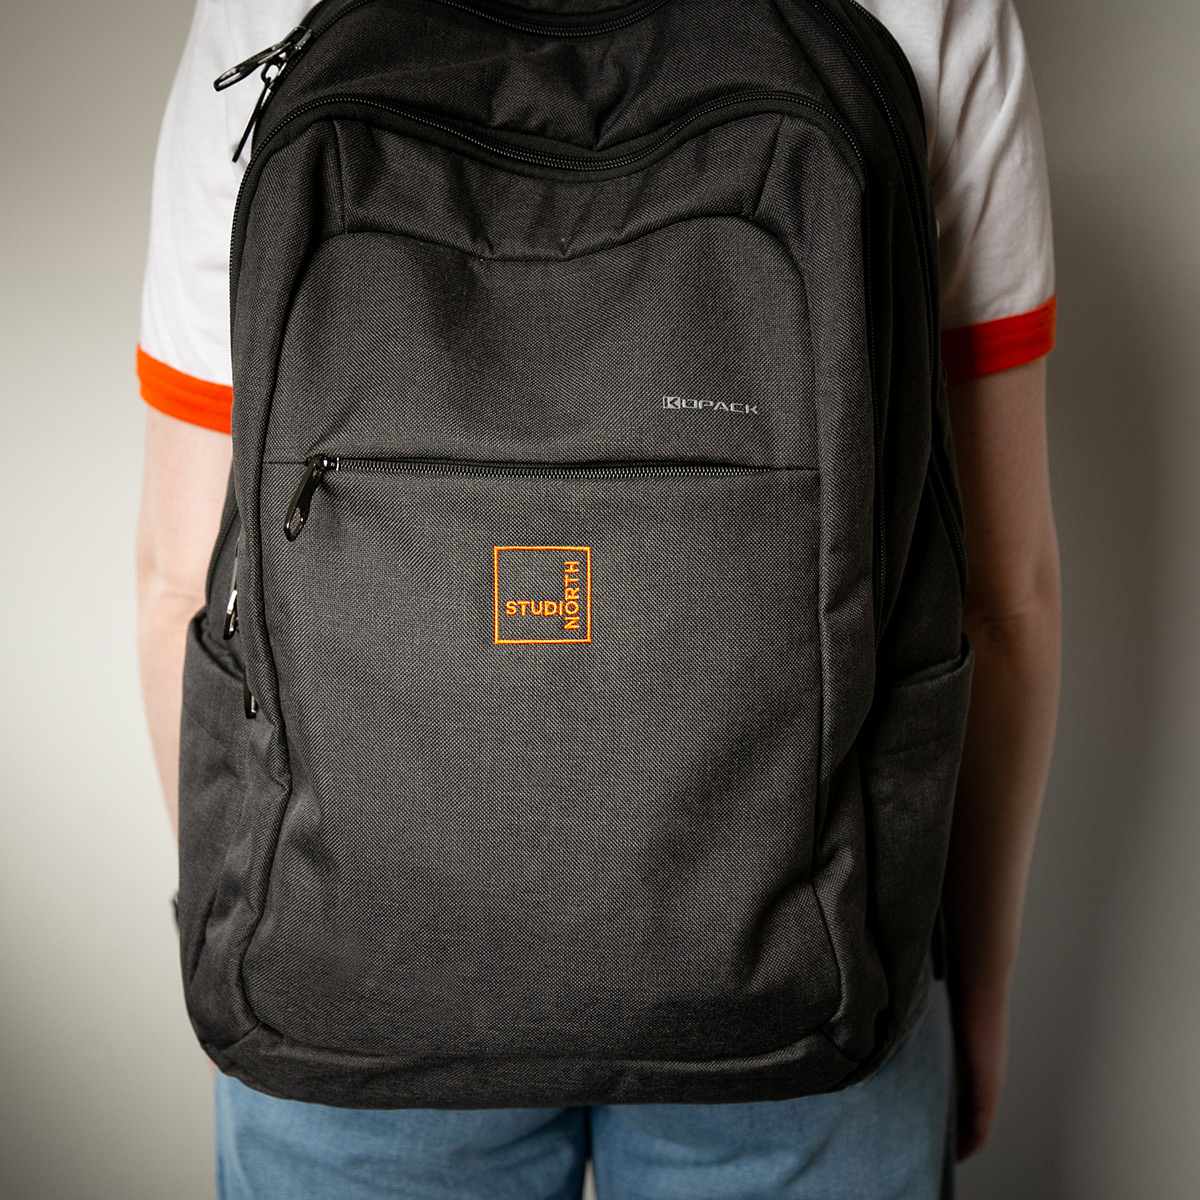 StudioNorth branded backpack